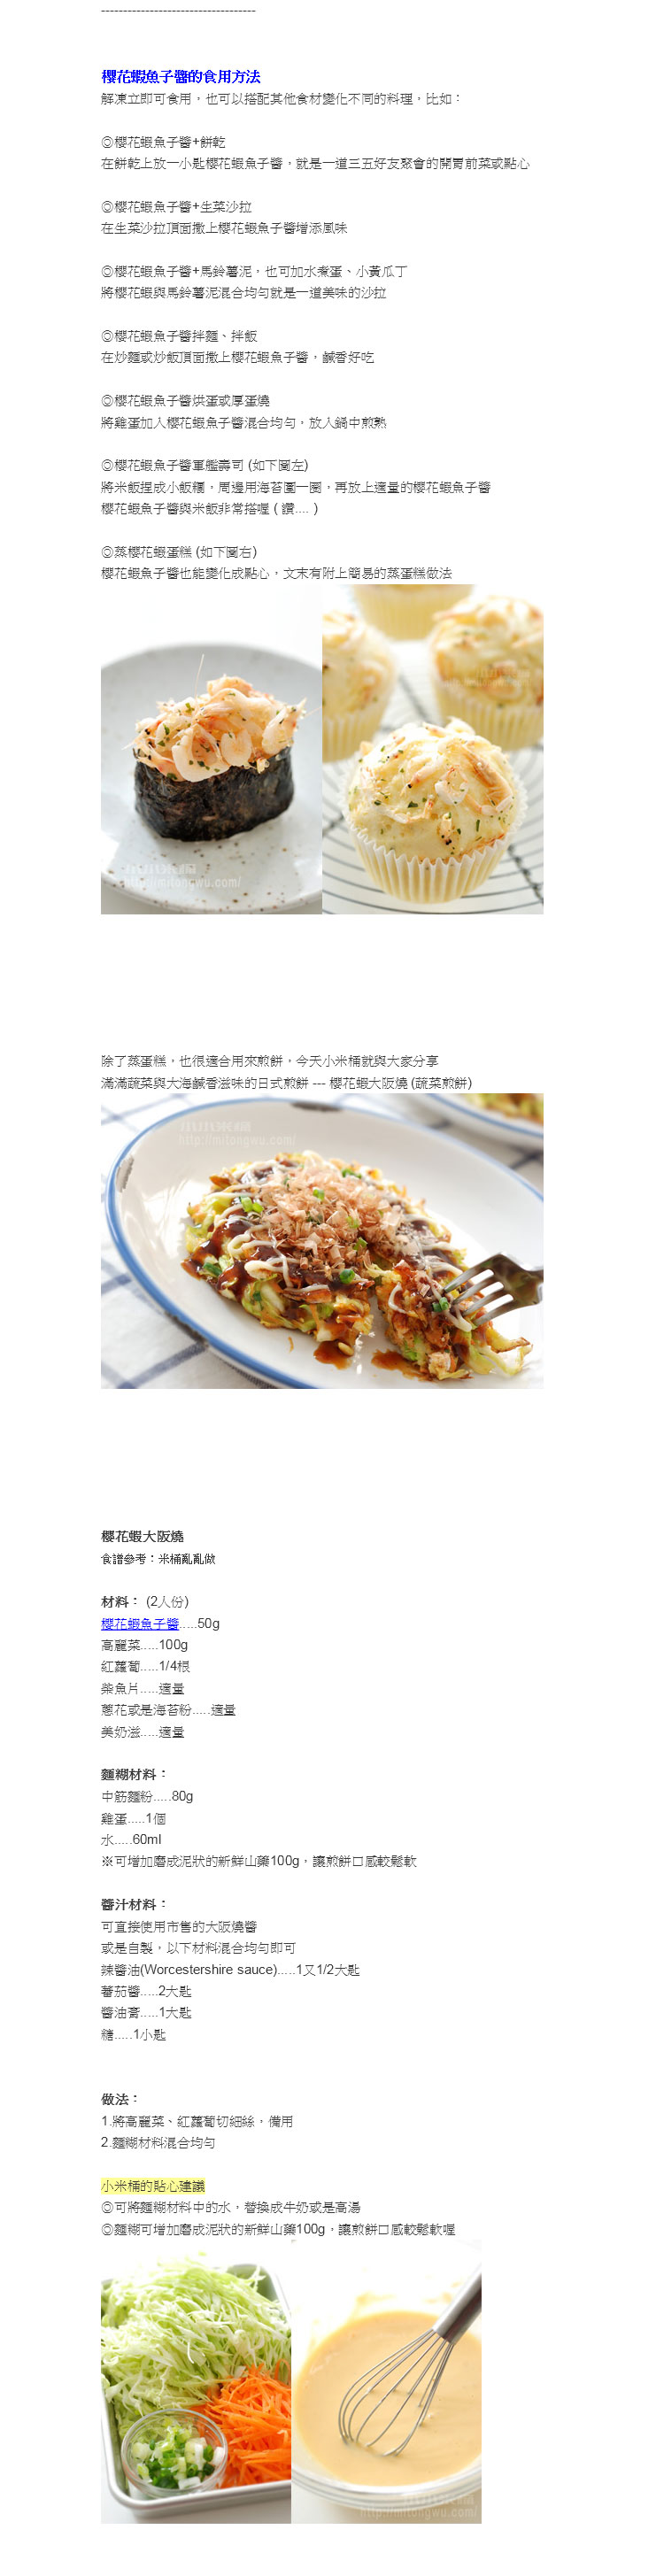 小小米桶介紹櫻花蝦魚子醬創意料理